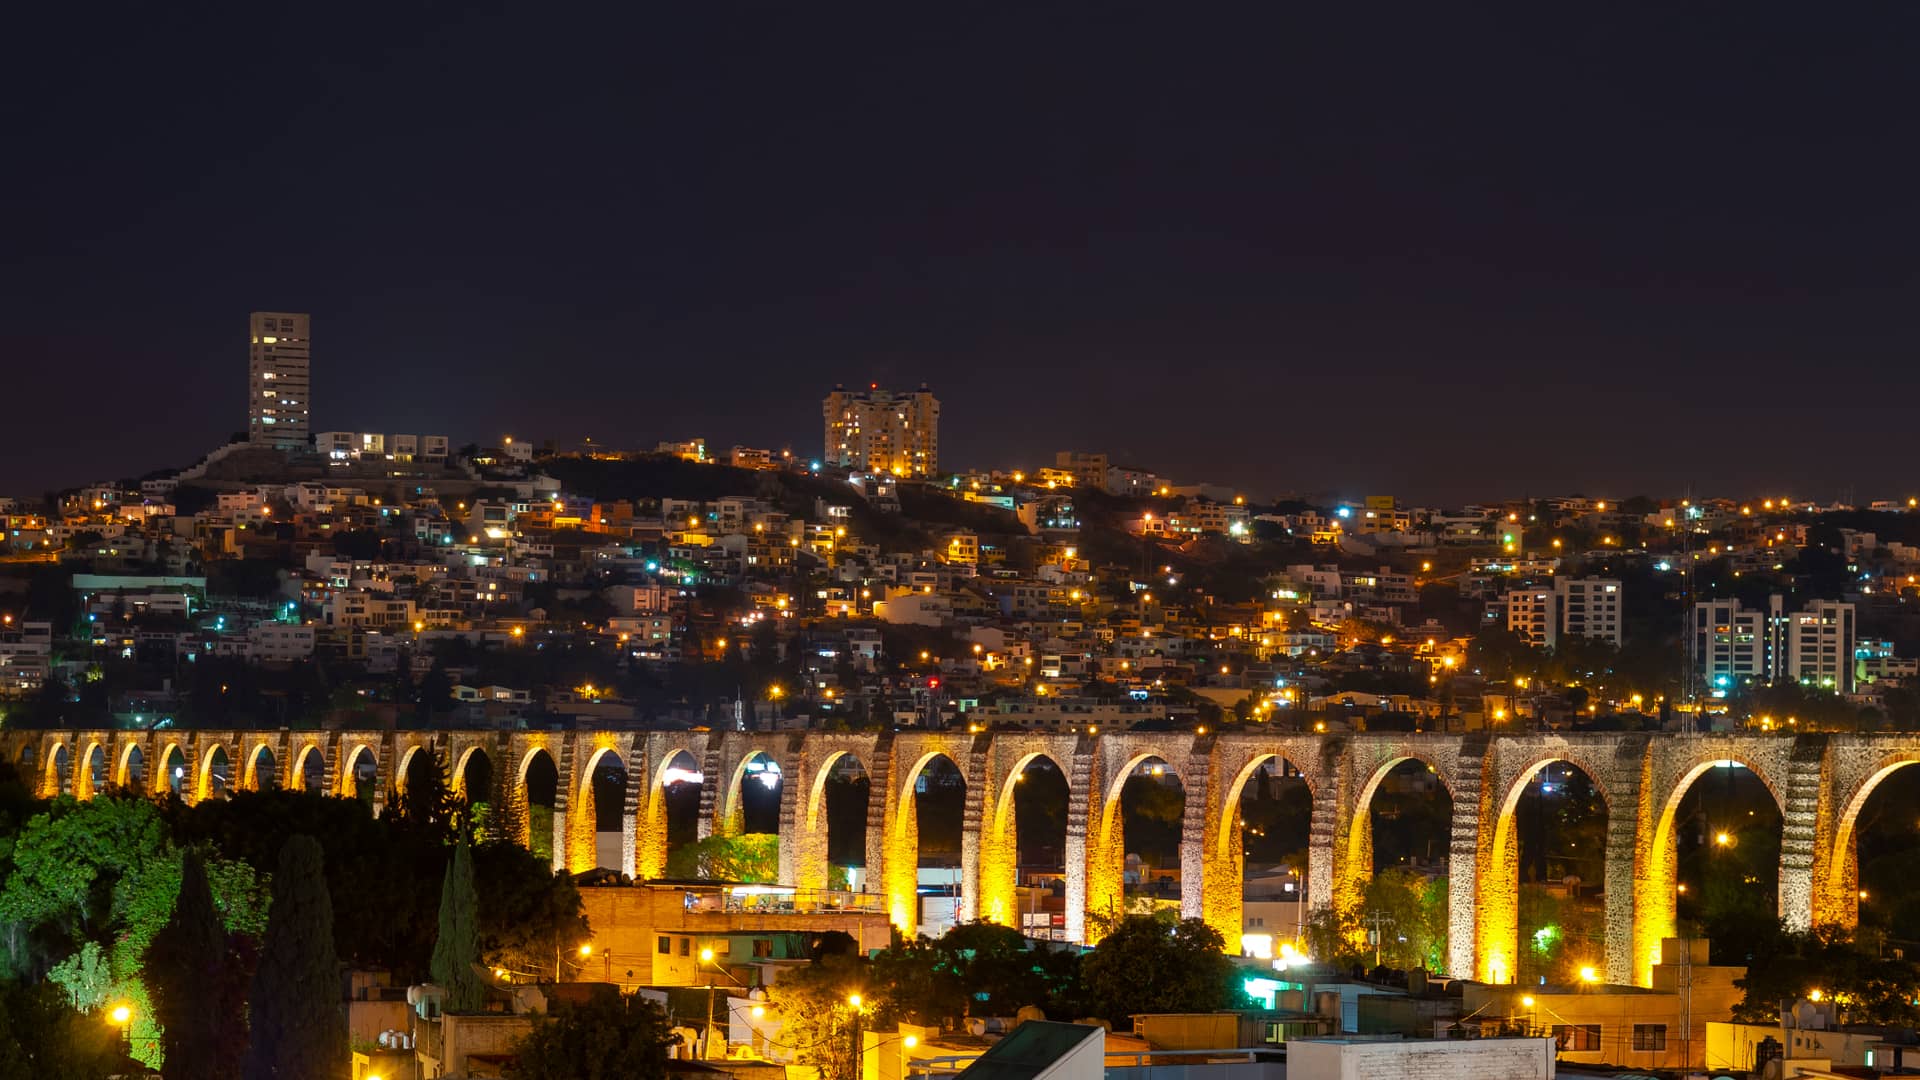 Viaducto de Queretaro ilumiando por la noche para representar las sucursales de sky en esa ciudad